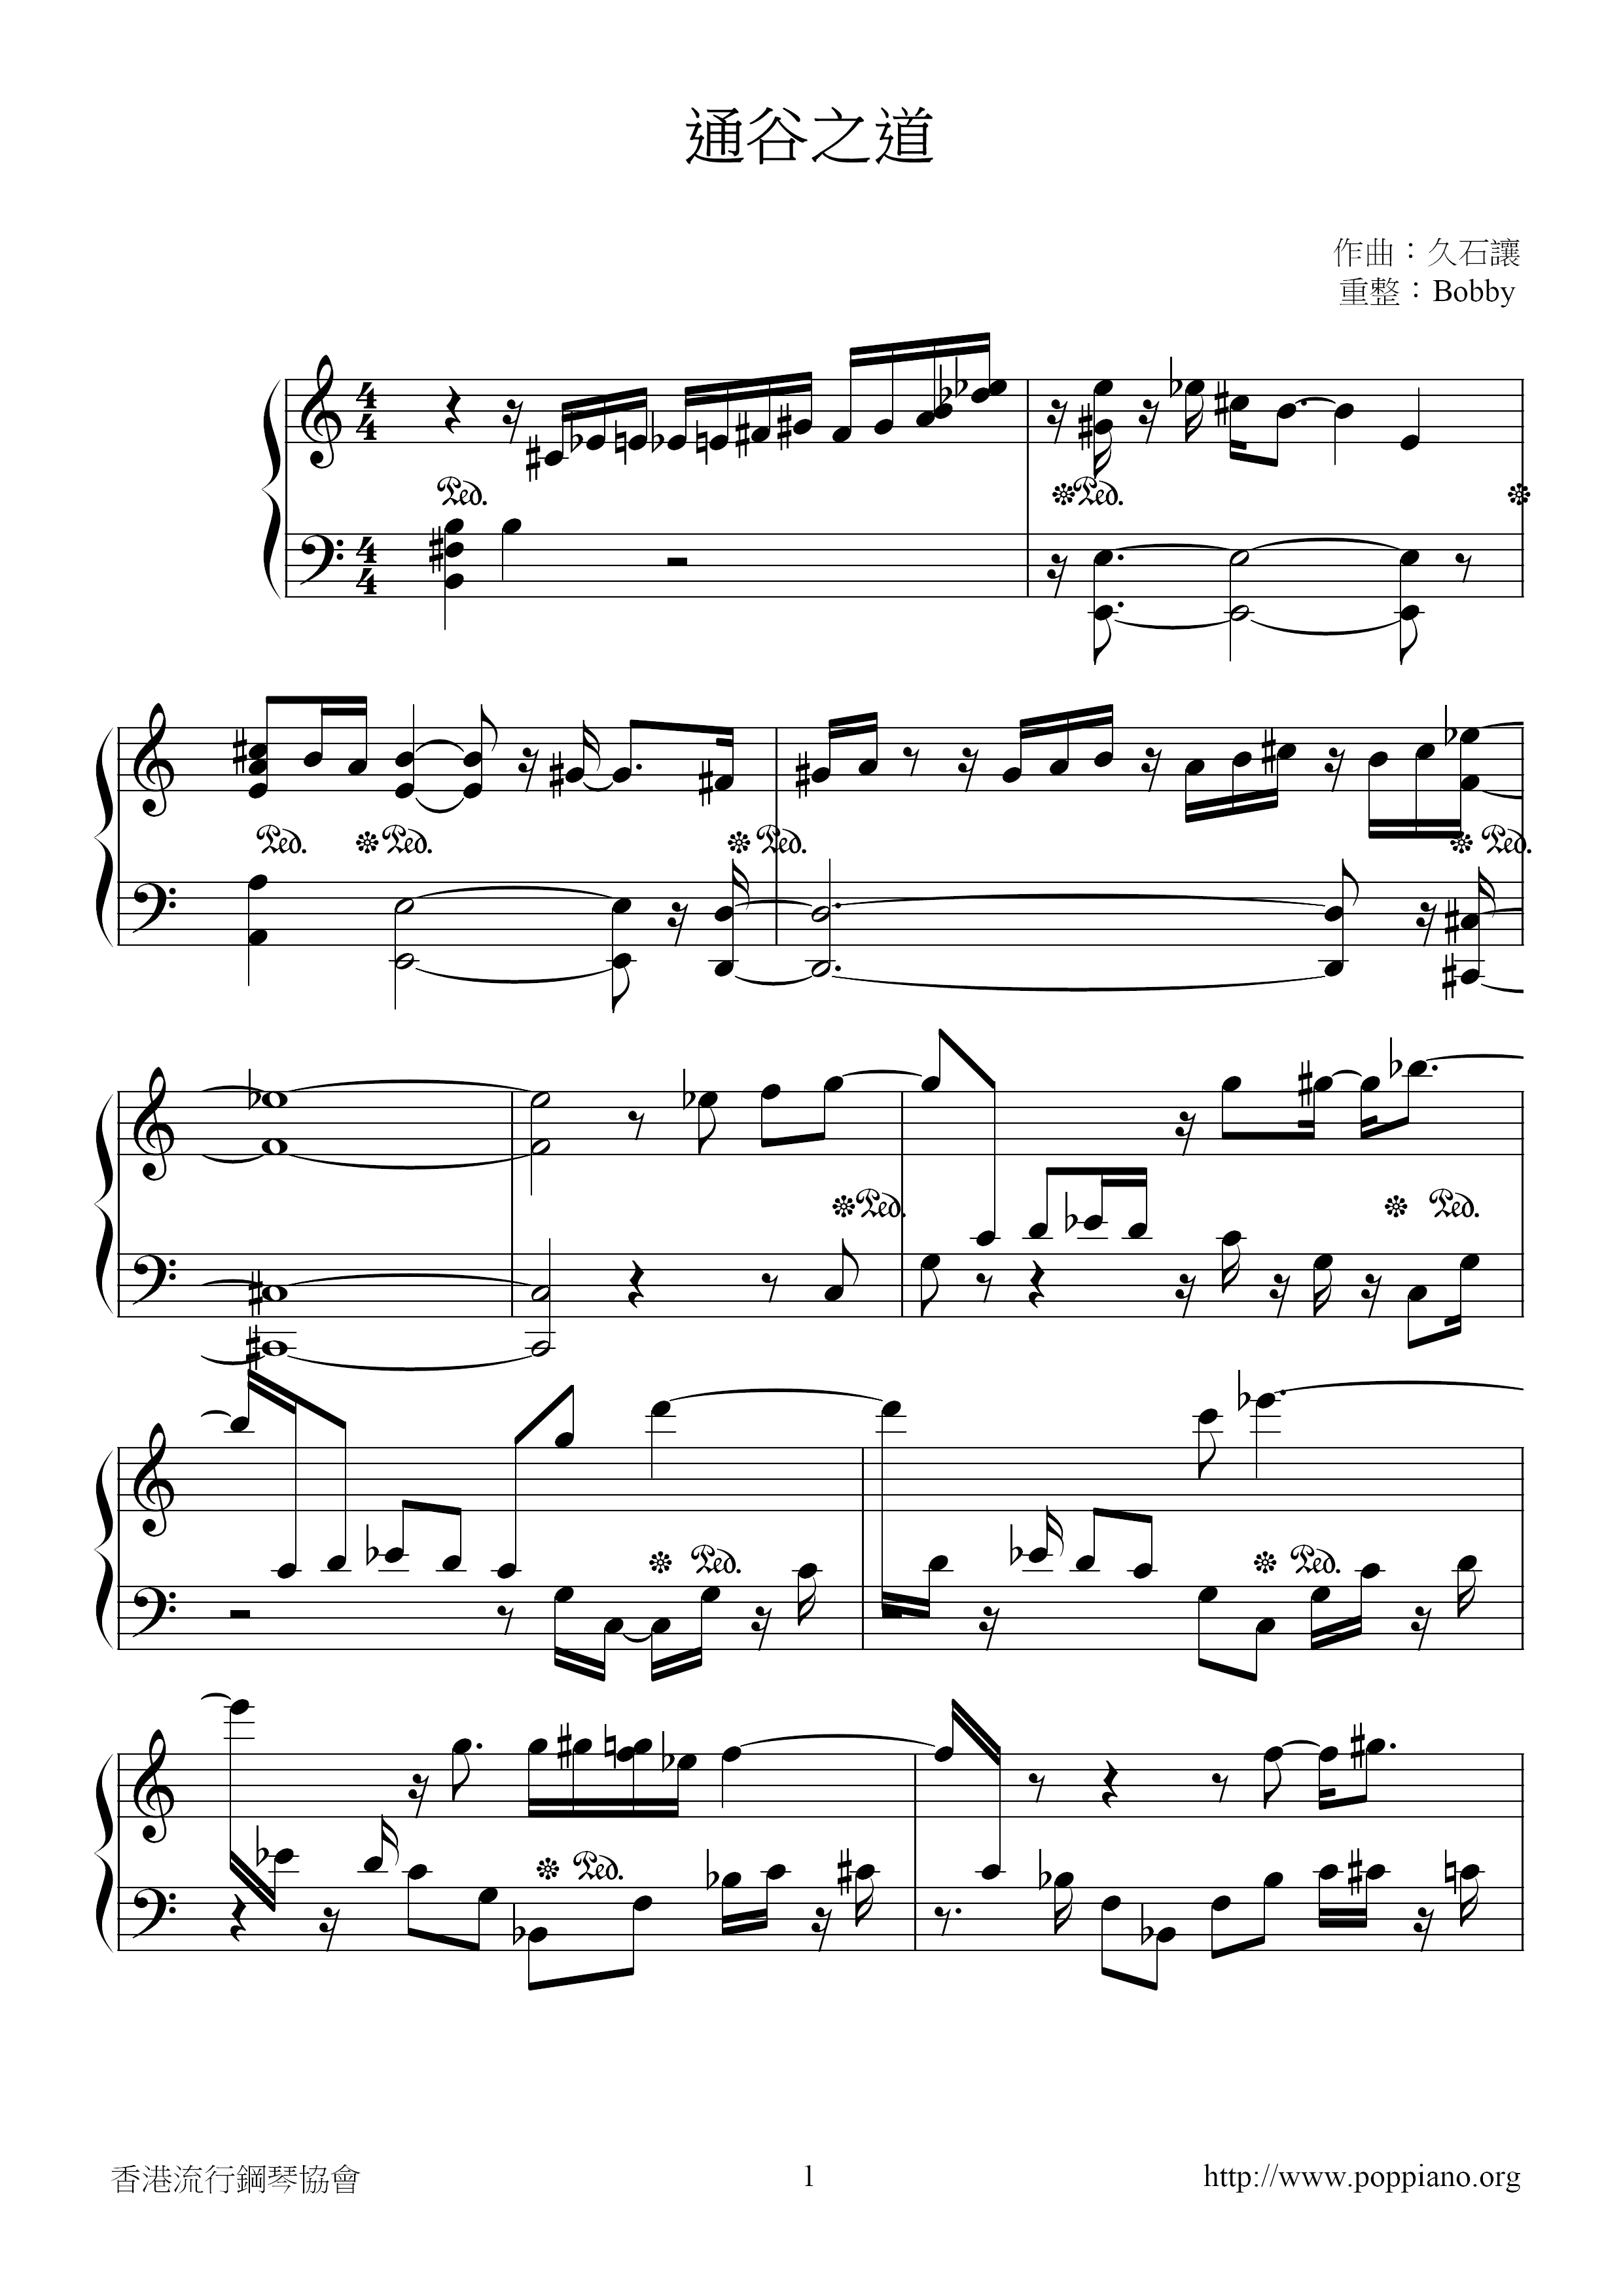 Tonggu Zhidao Score